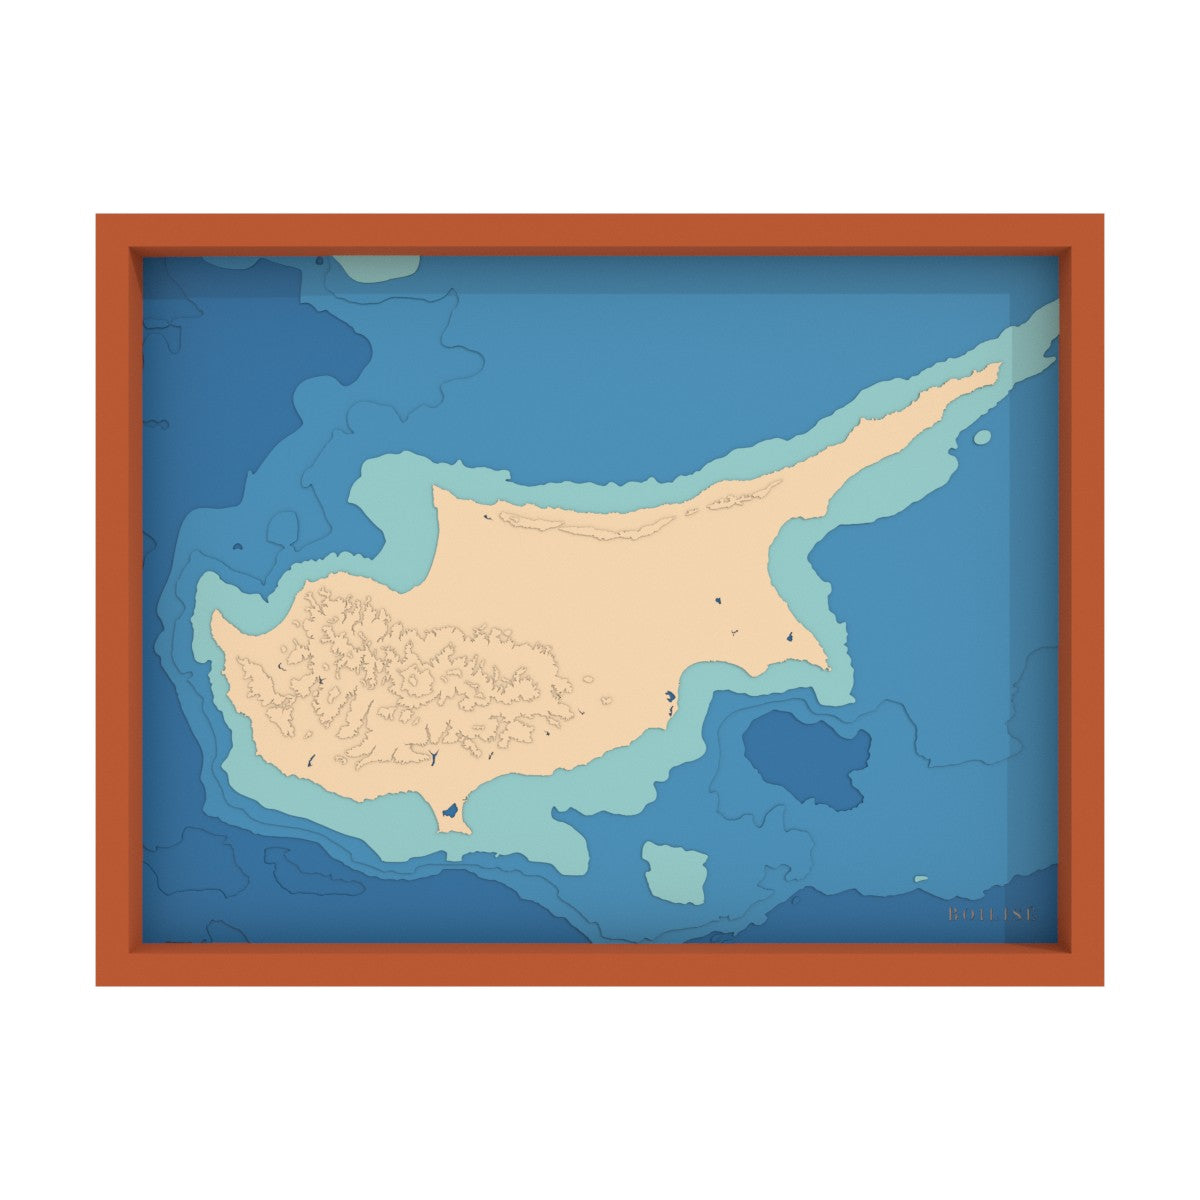 Carte de Chypre